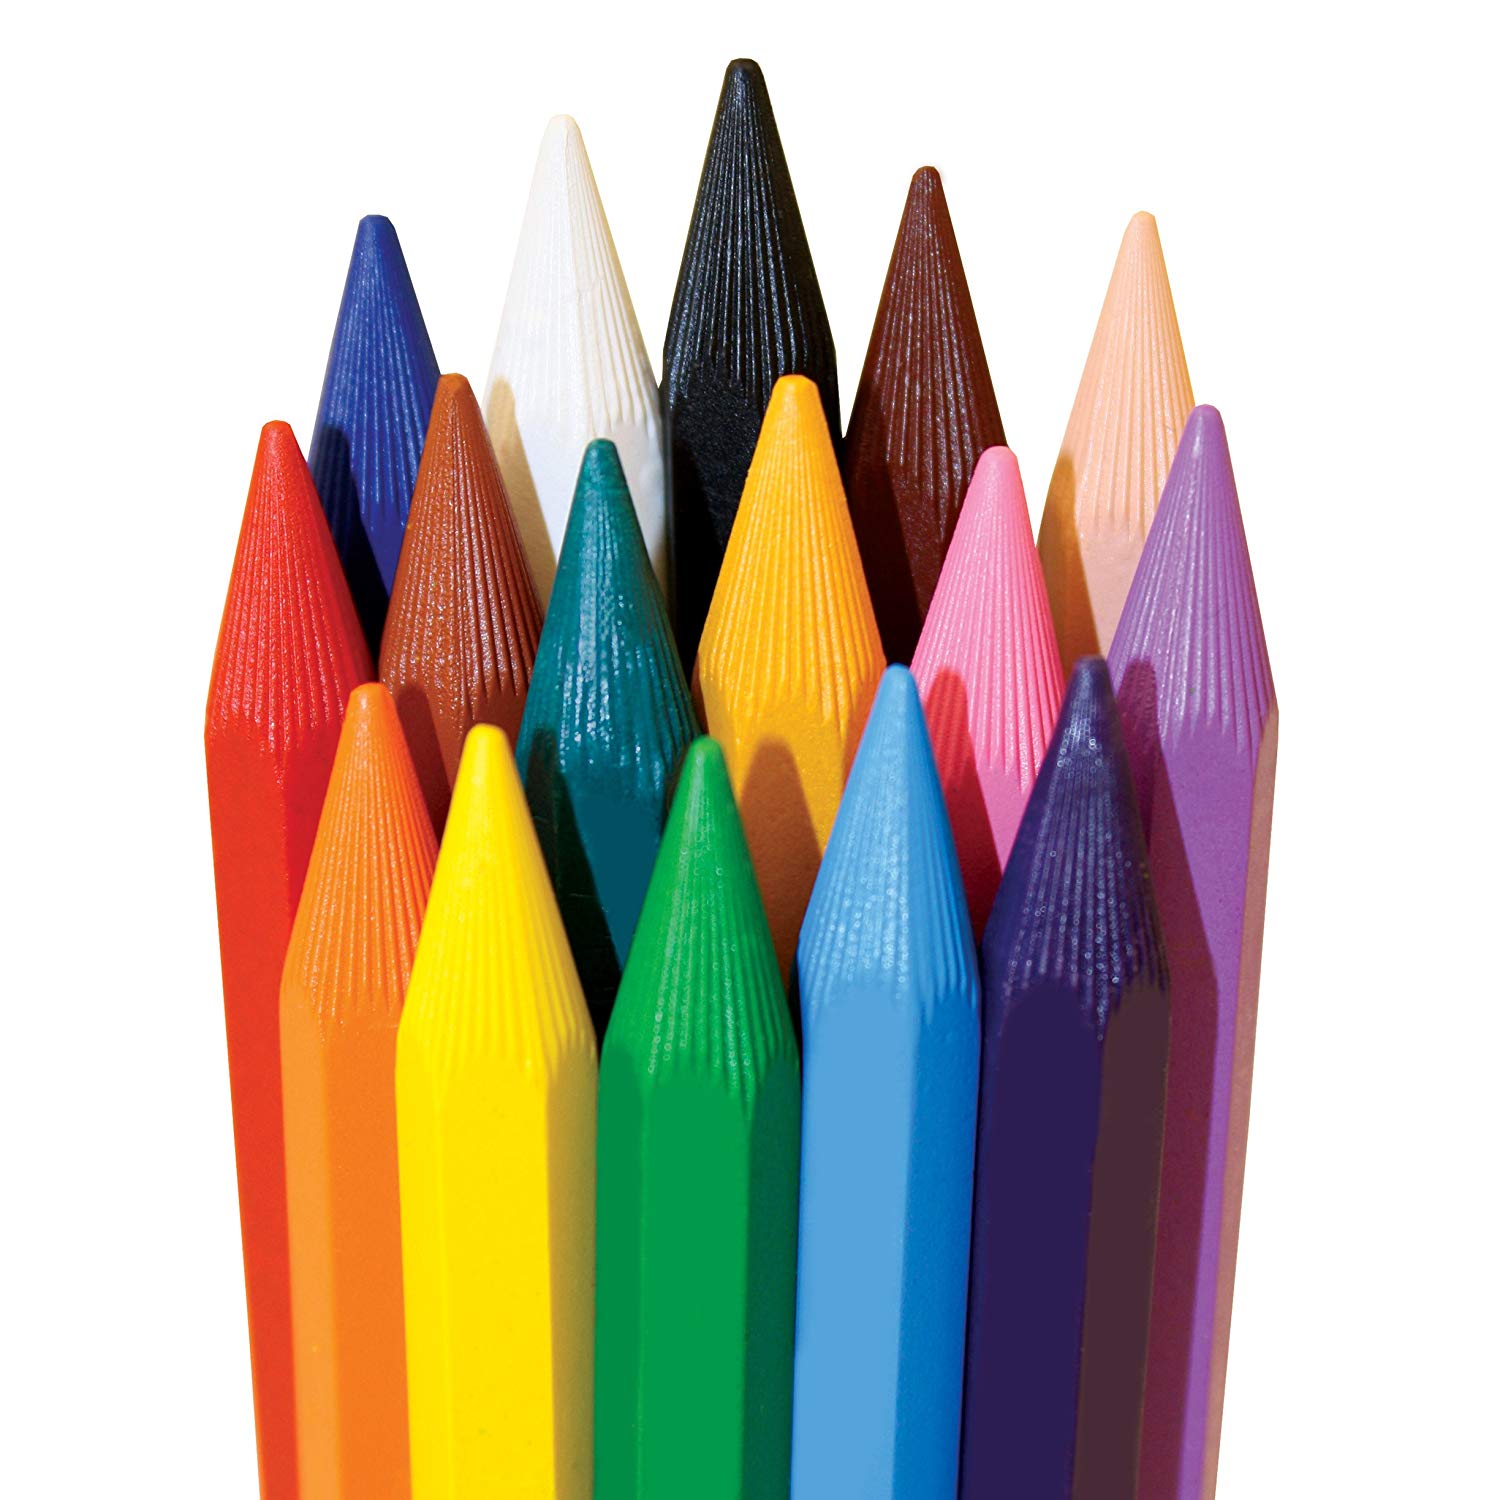 Stabilo kuru boya kalemi setleri